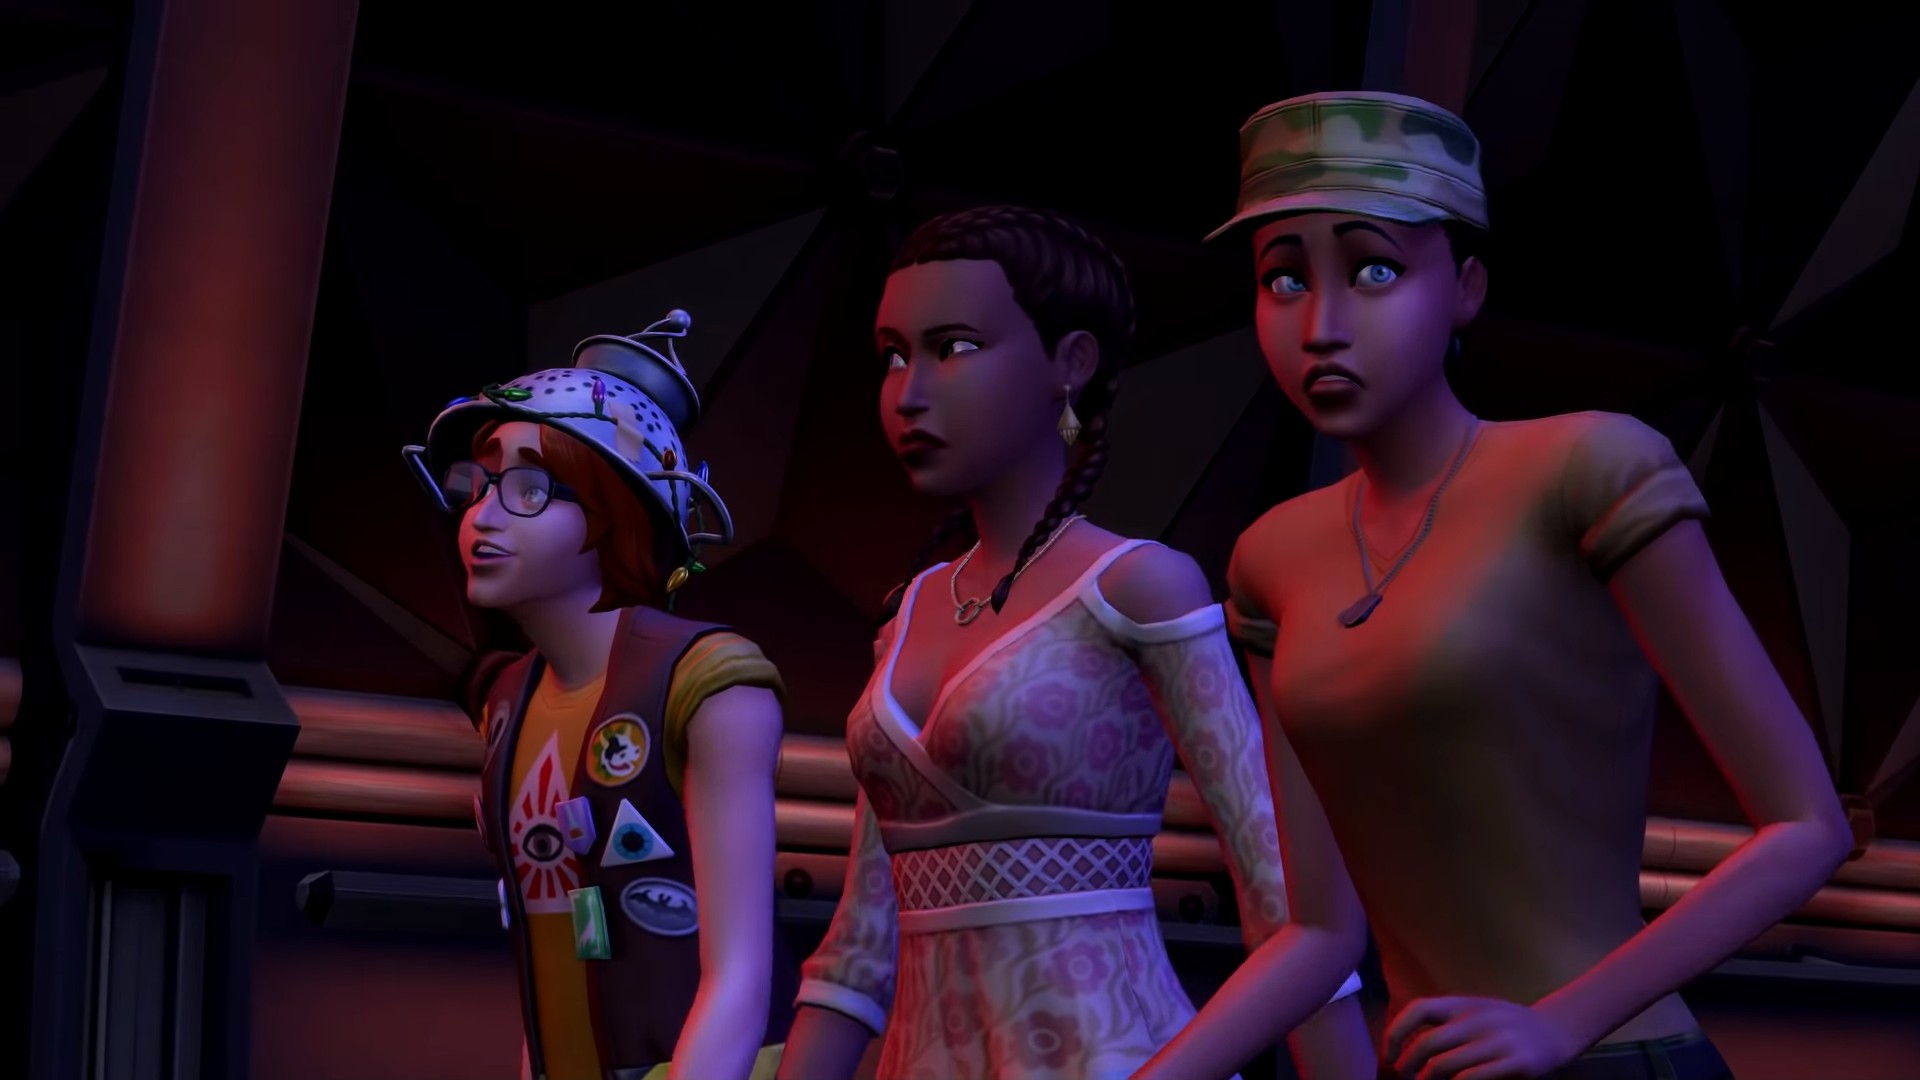 The Sims 4: StrangerVille - screenshot 4